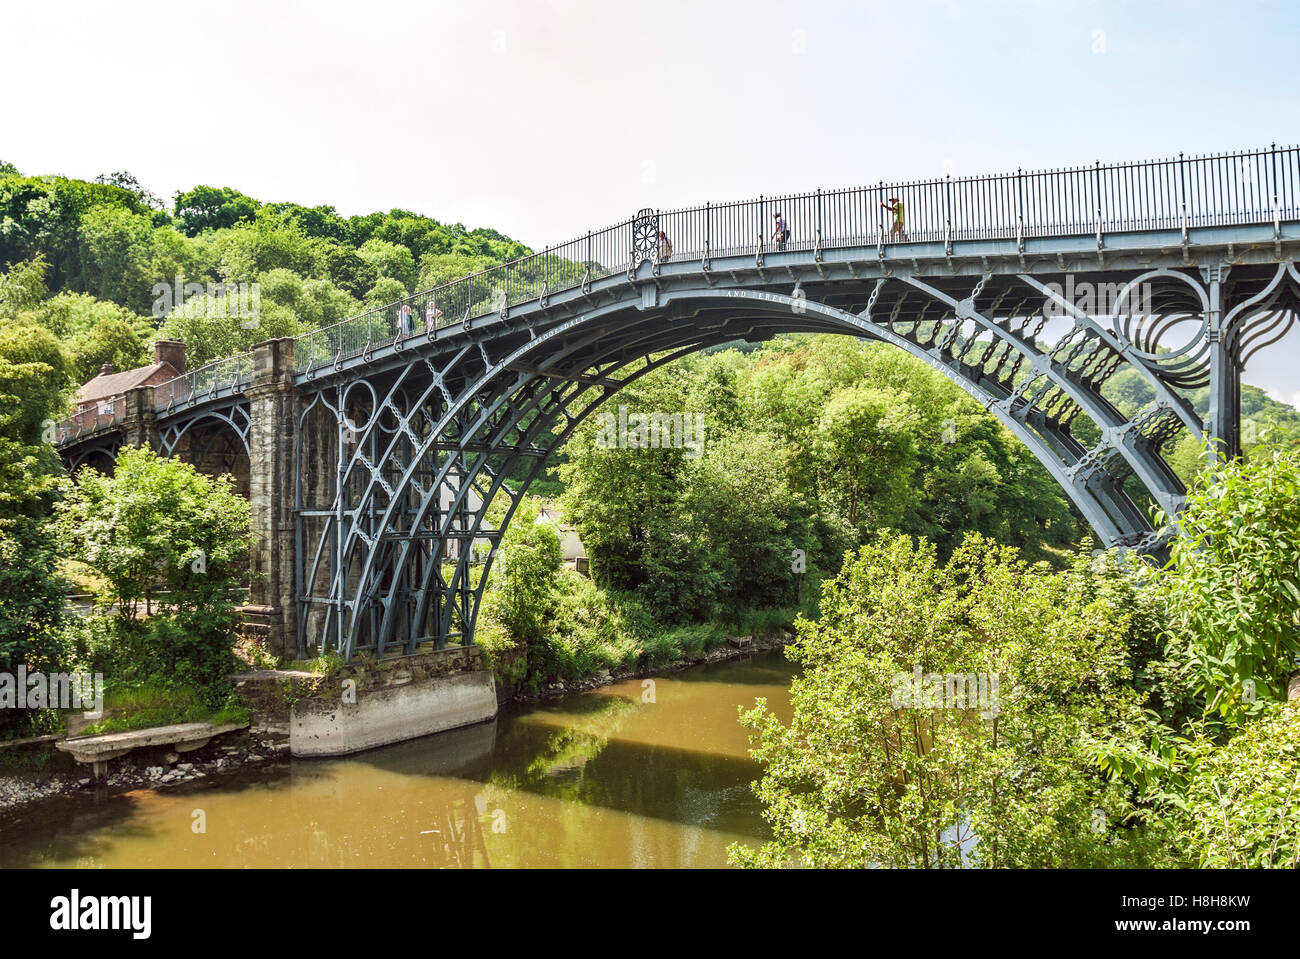 Il ponte di ferro attraversa il fiume Severn a Ironbridge Gorge, dal villaggio di Ironbridge, nello Shropshire, Inghilterra. Foto Stock